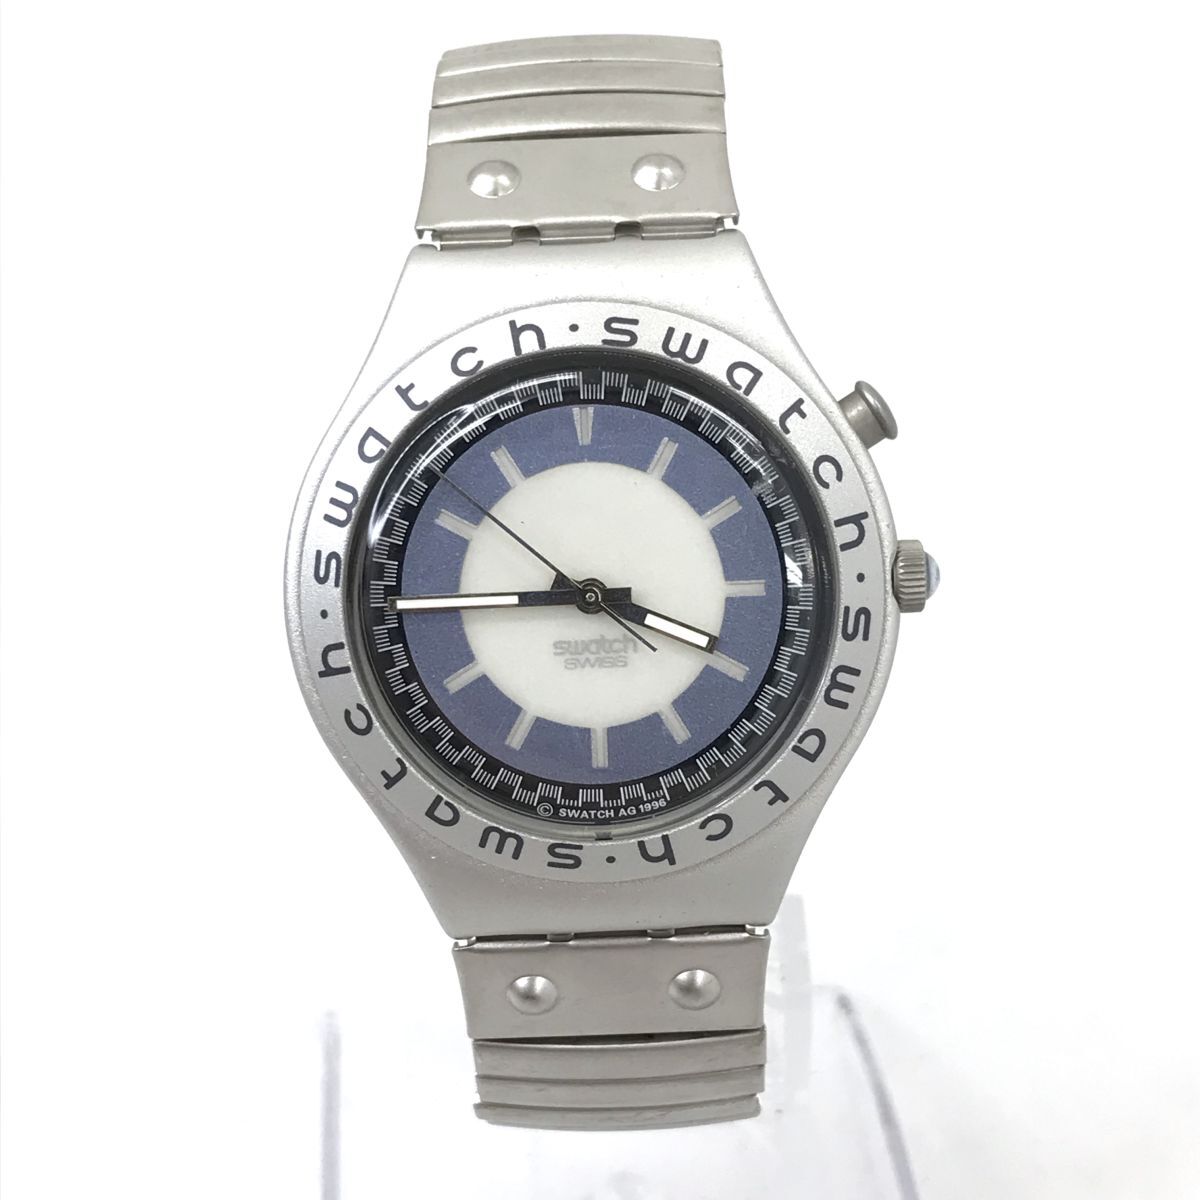  очень красивый товар Swatch Swatch IRONY Irony наручные часы кварц коллекция модный голубой серебряный .. эластичный батарейка заменен рабочее состояние подтверждено 